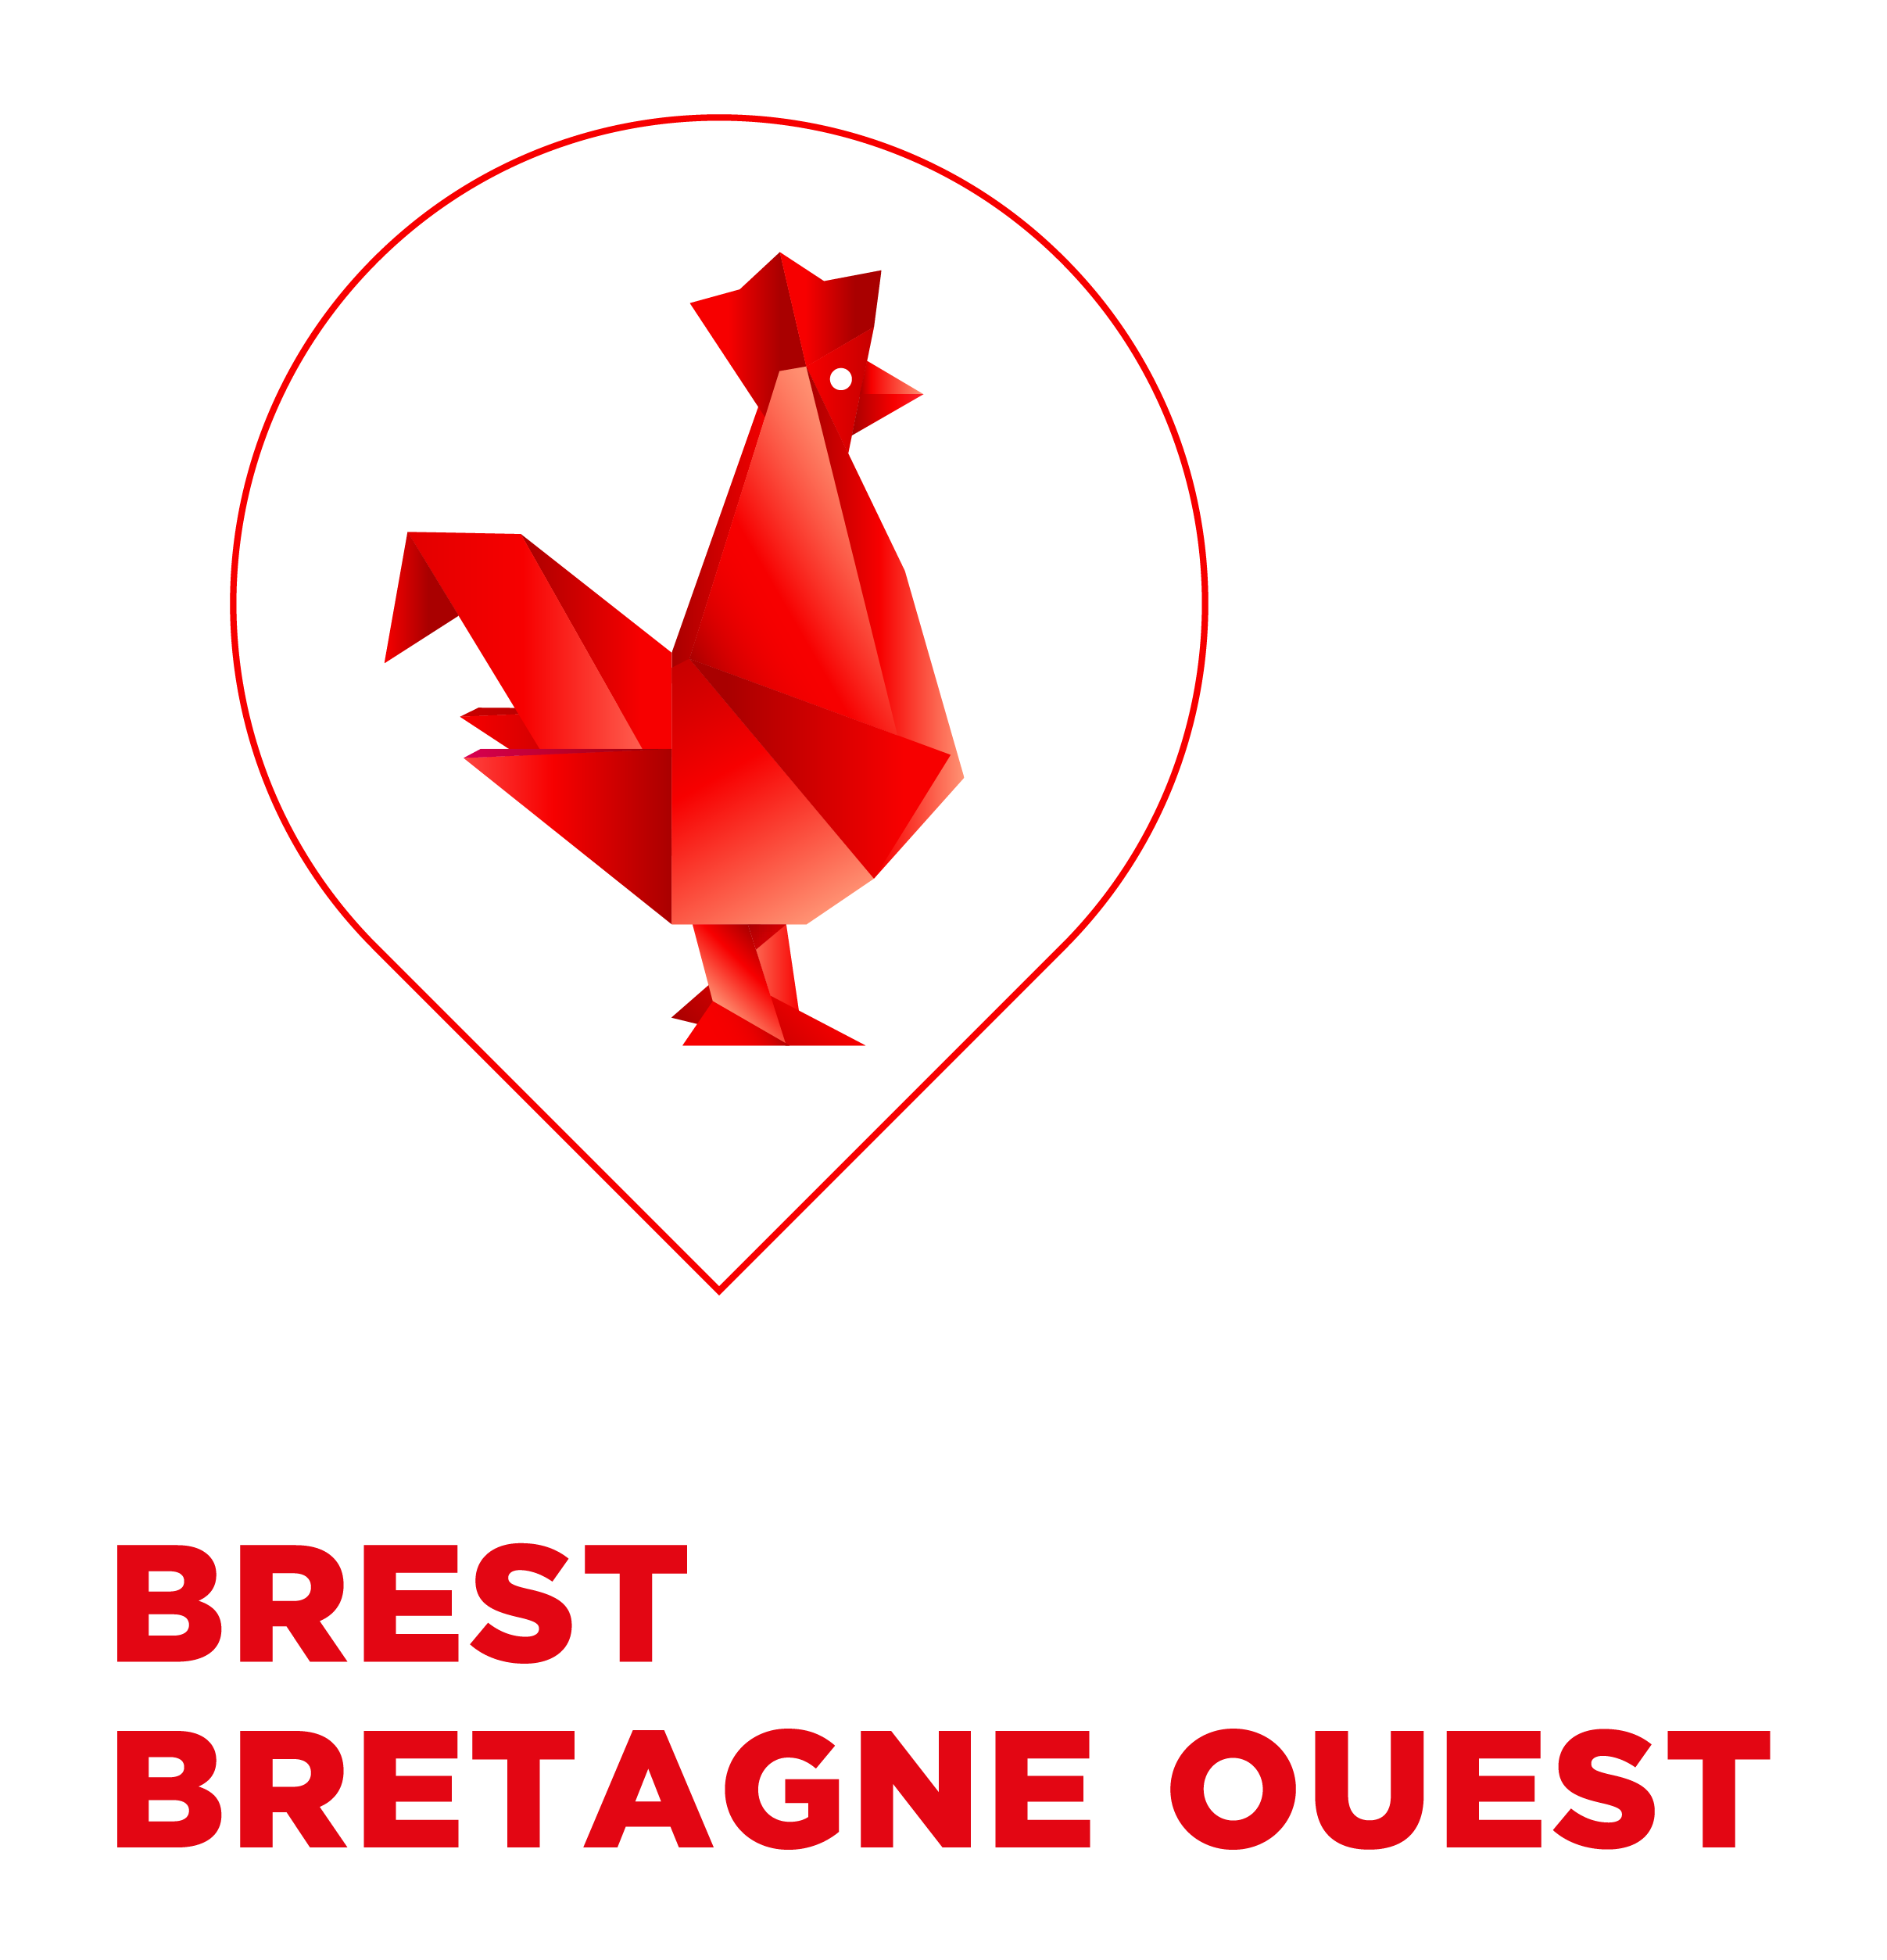 French Tech Brest +